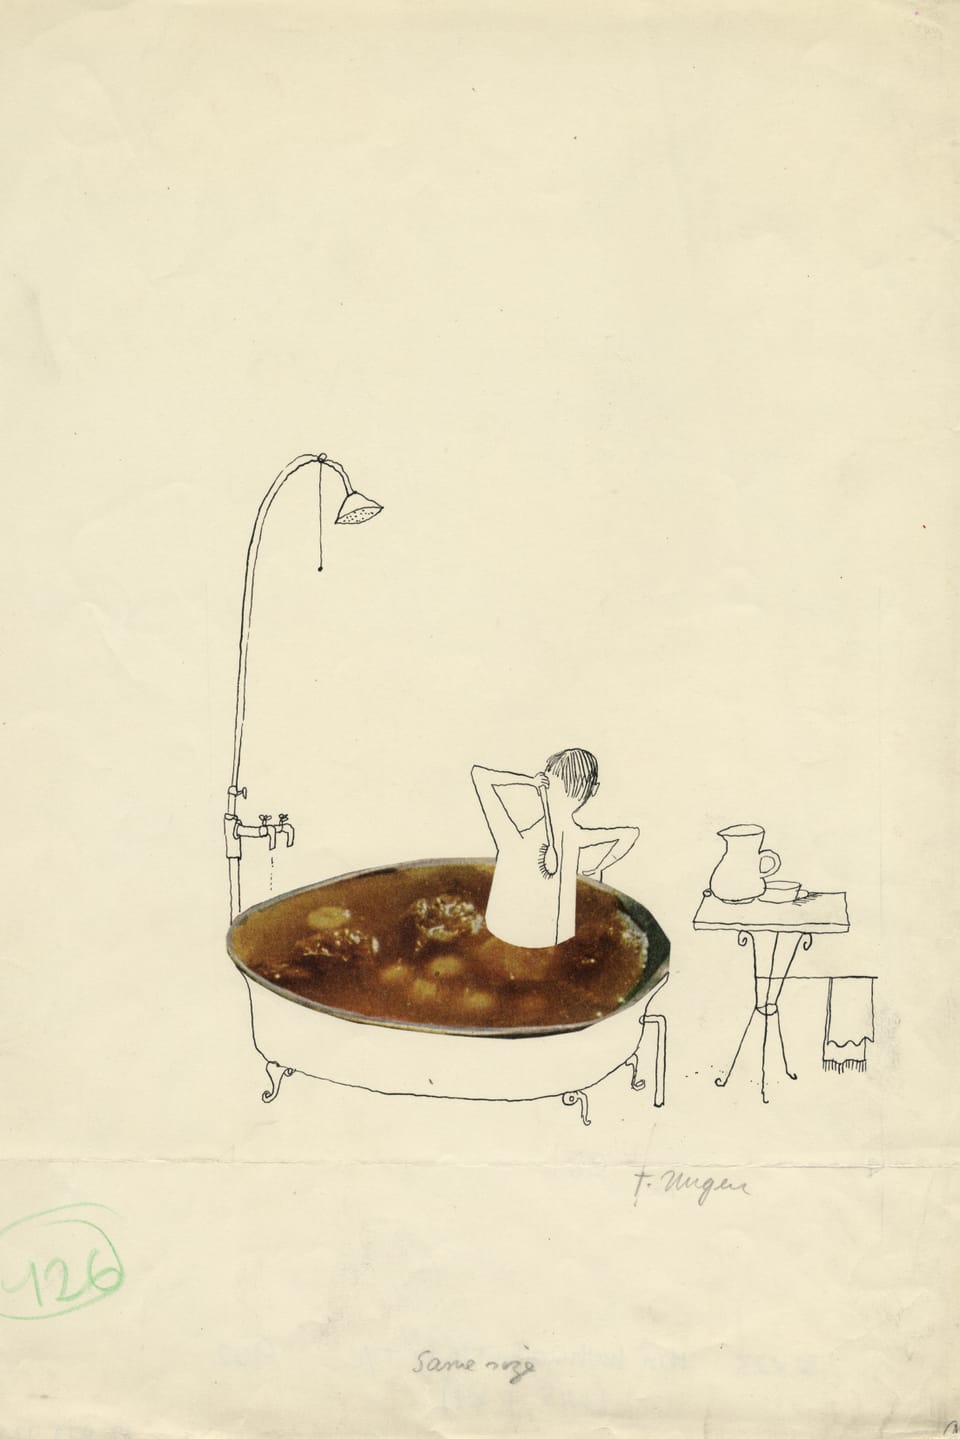 Eine Zeichnung (Tusche und Fotocollage auf Papier) zeigt einen Mann in einer gronden Badewanne, die sich in einer braunen Flüssigkeit wäscht, die an eine Suppe oder auch eine Kloake erinnert.